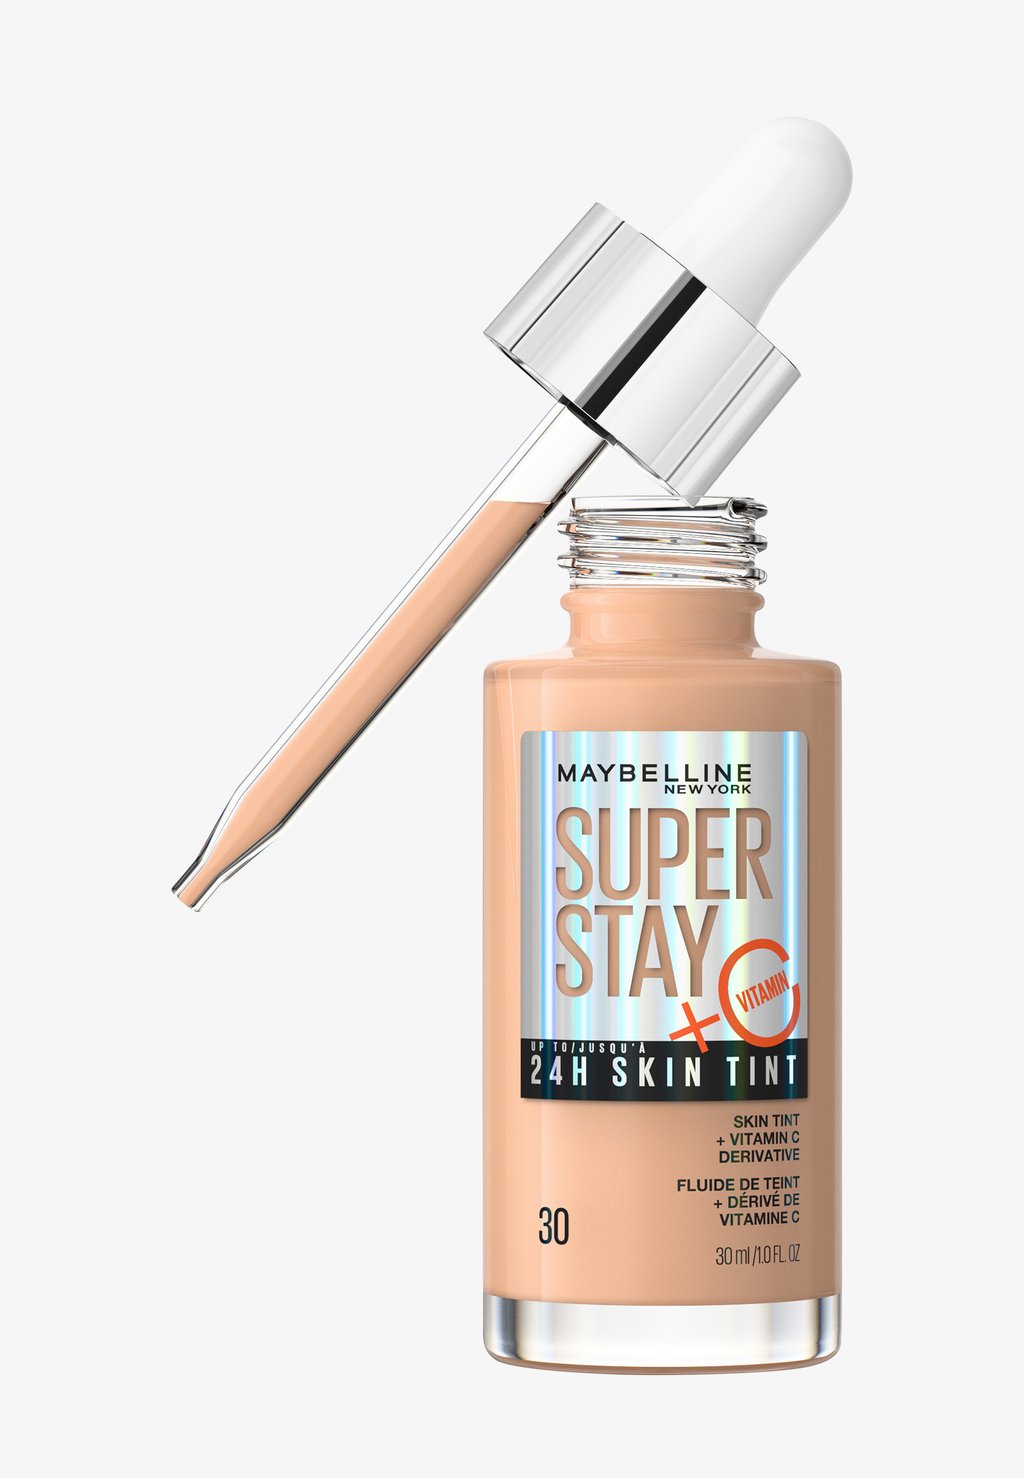 Тональный крем Super Stay 24H Skin Tint Maybelline New York, цвет sand